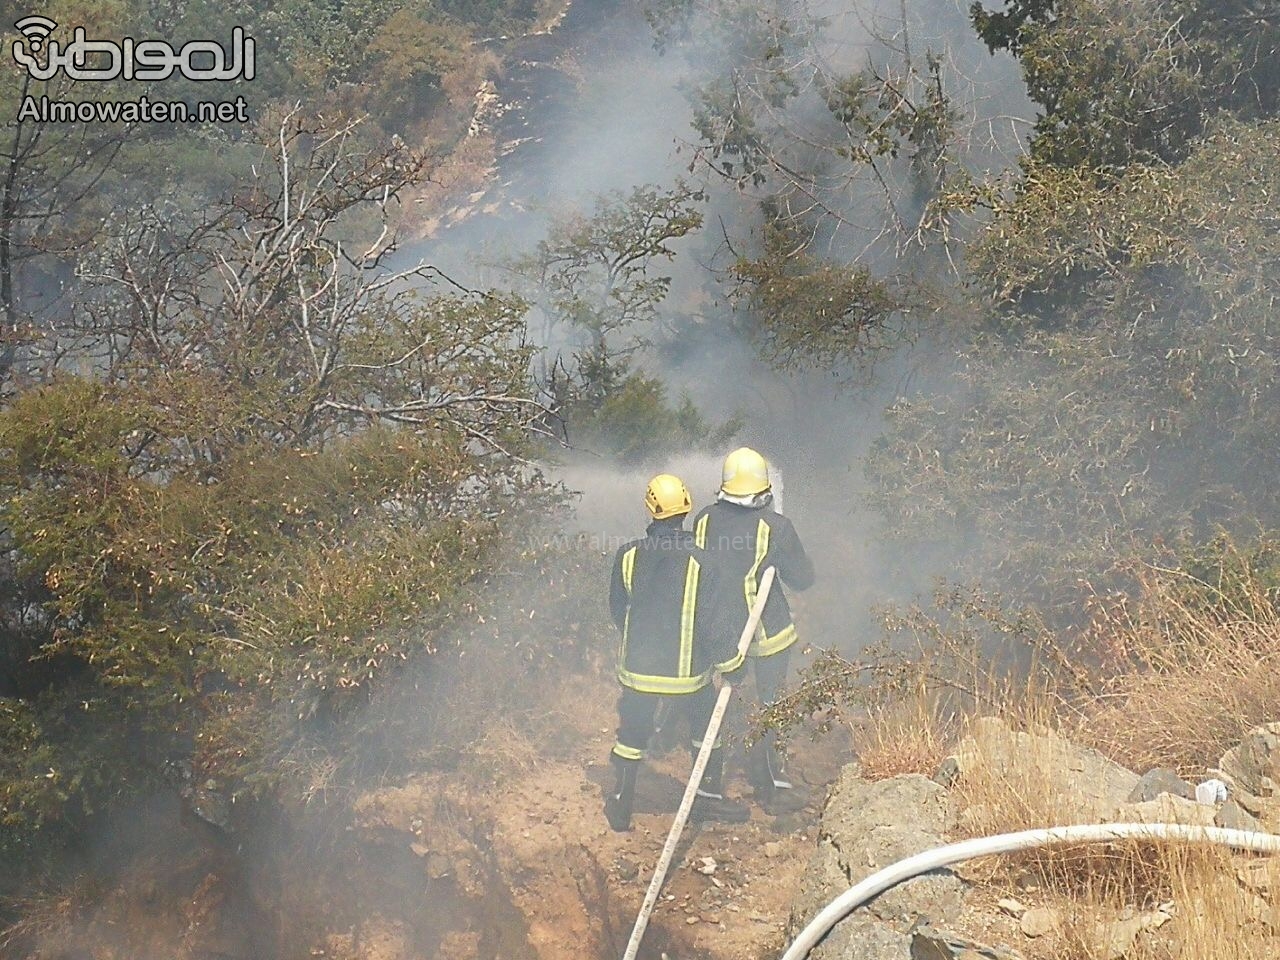 بالصور.. التخلص من المخلفات يحرق قطعًا زراعية في قرية العقيقة بالنماص